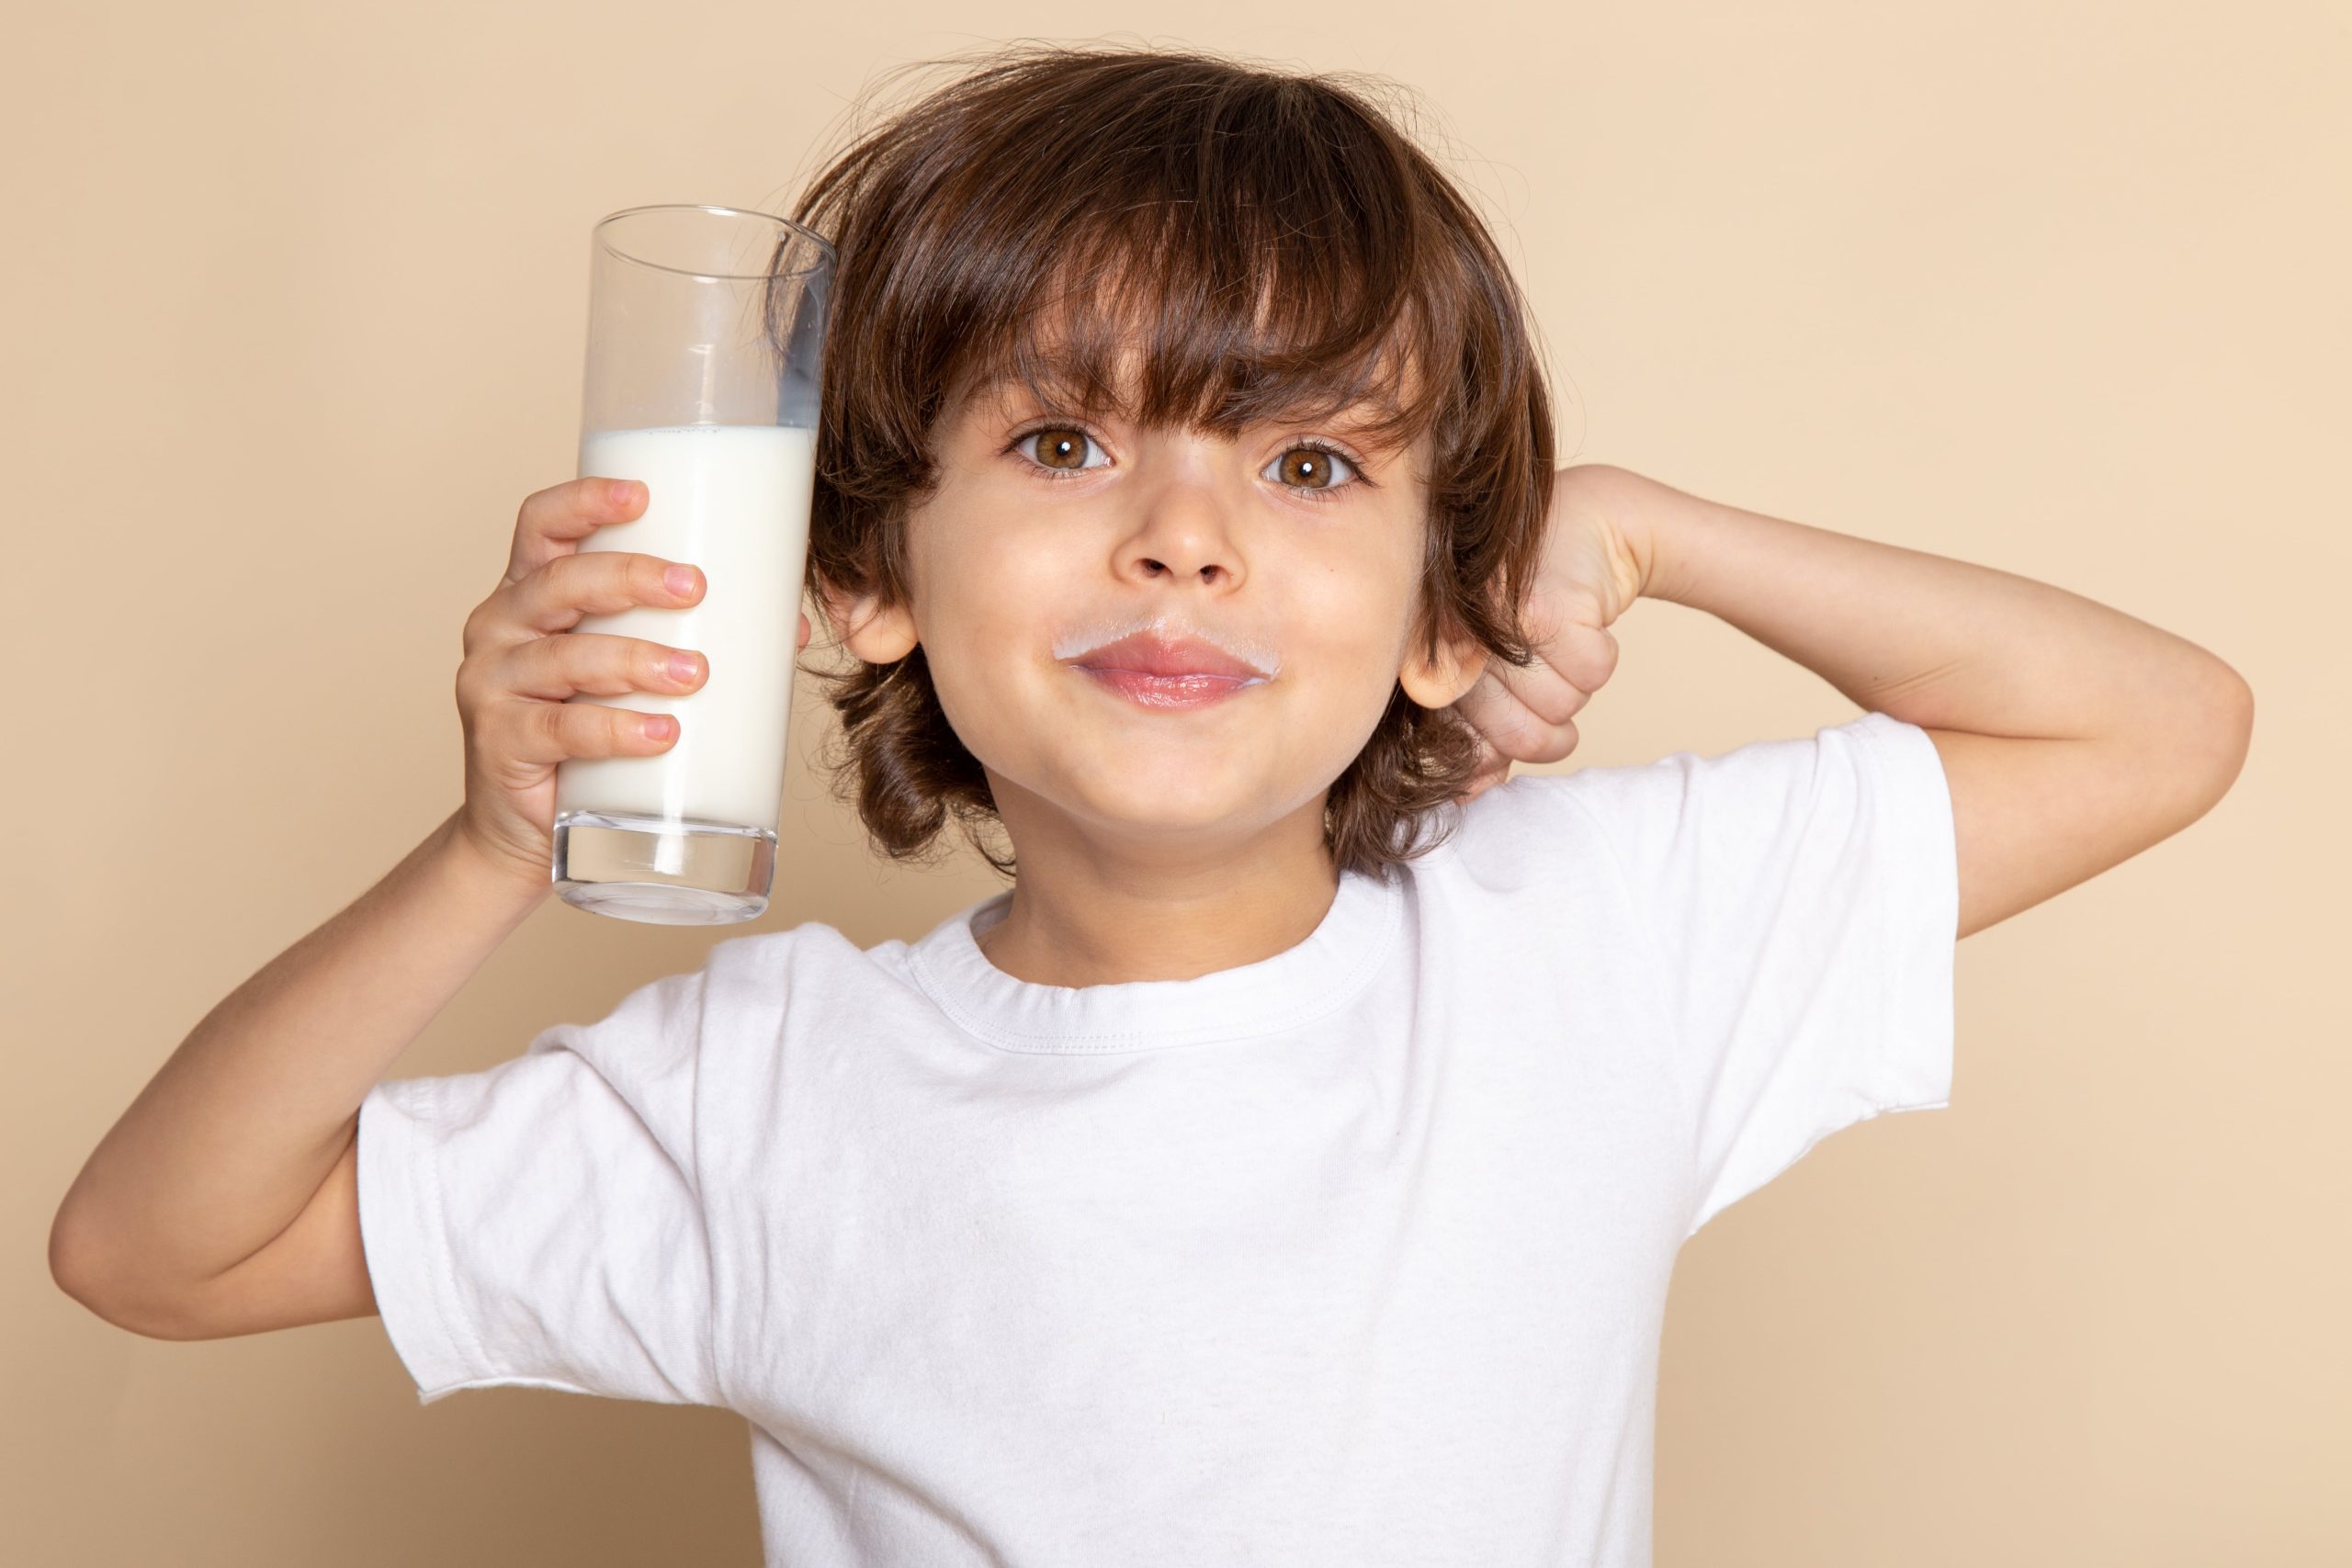 ۱۵موردی که باید درباره شیر بدانید؛ باورهای اشتباه و فواید شیر